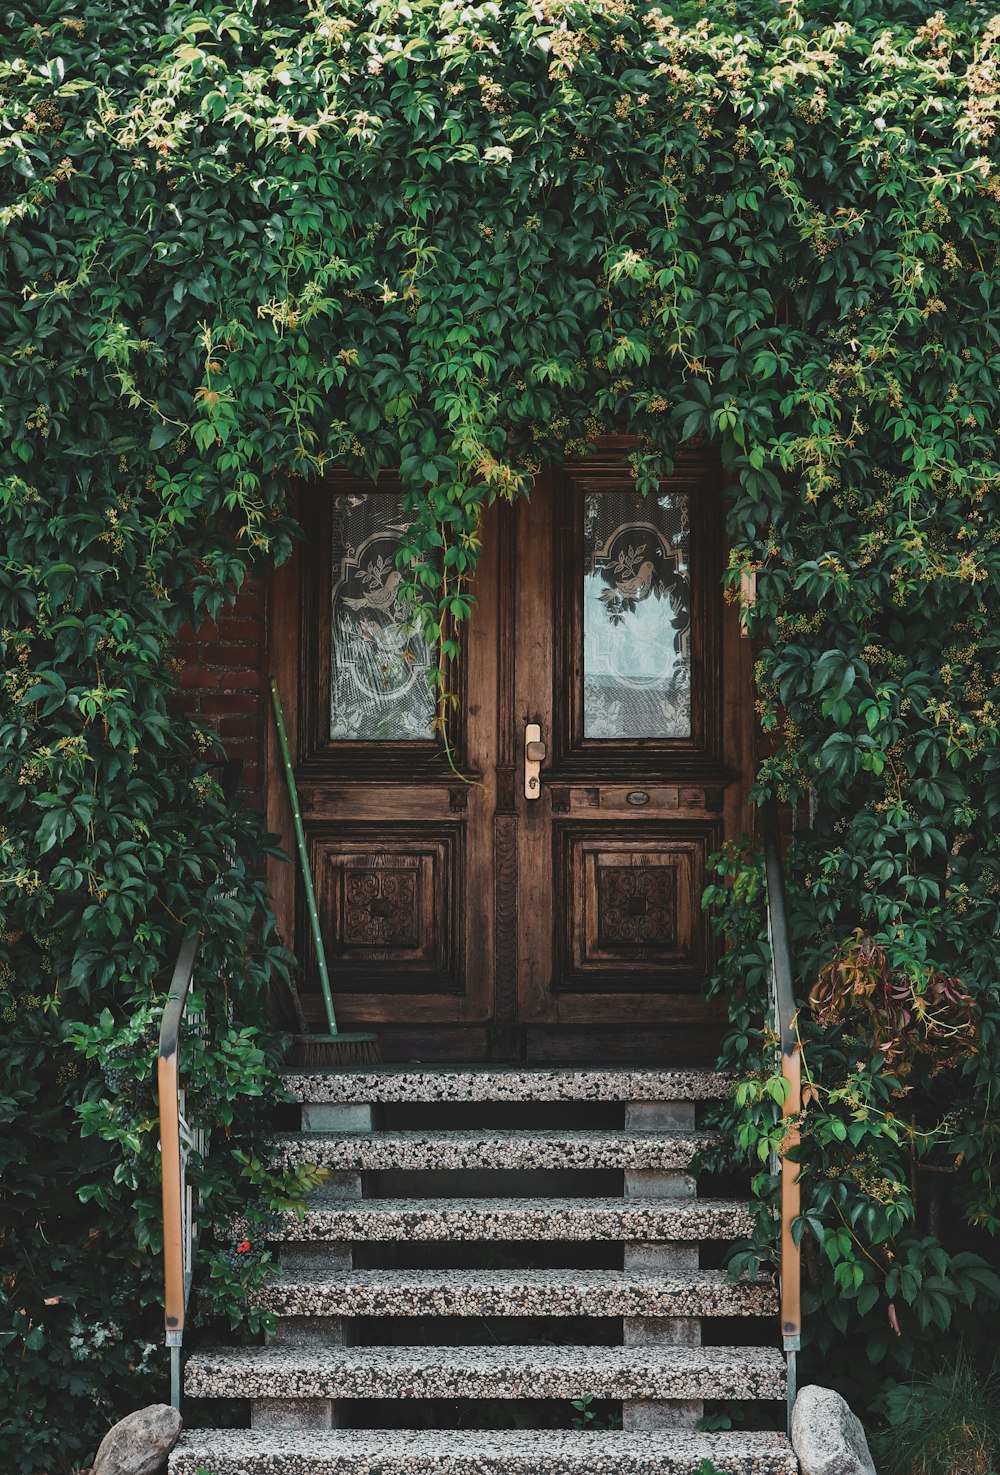 brown wooden door with green vines